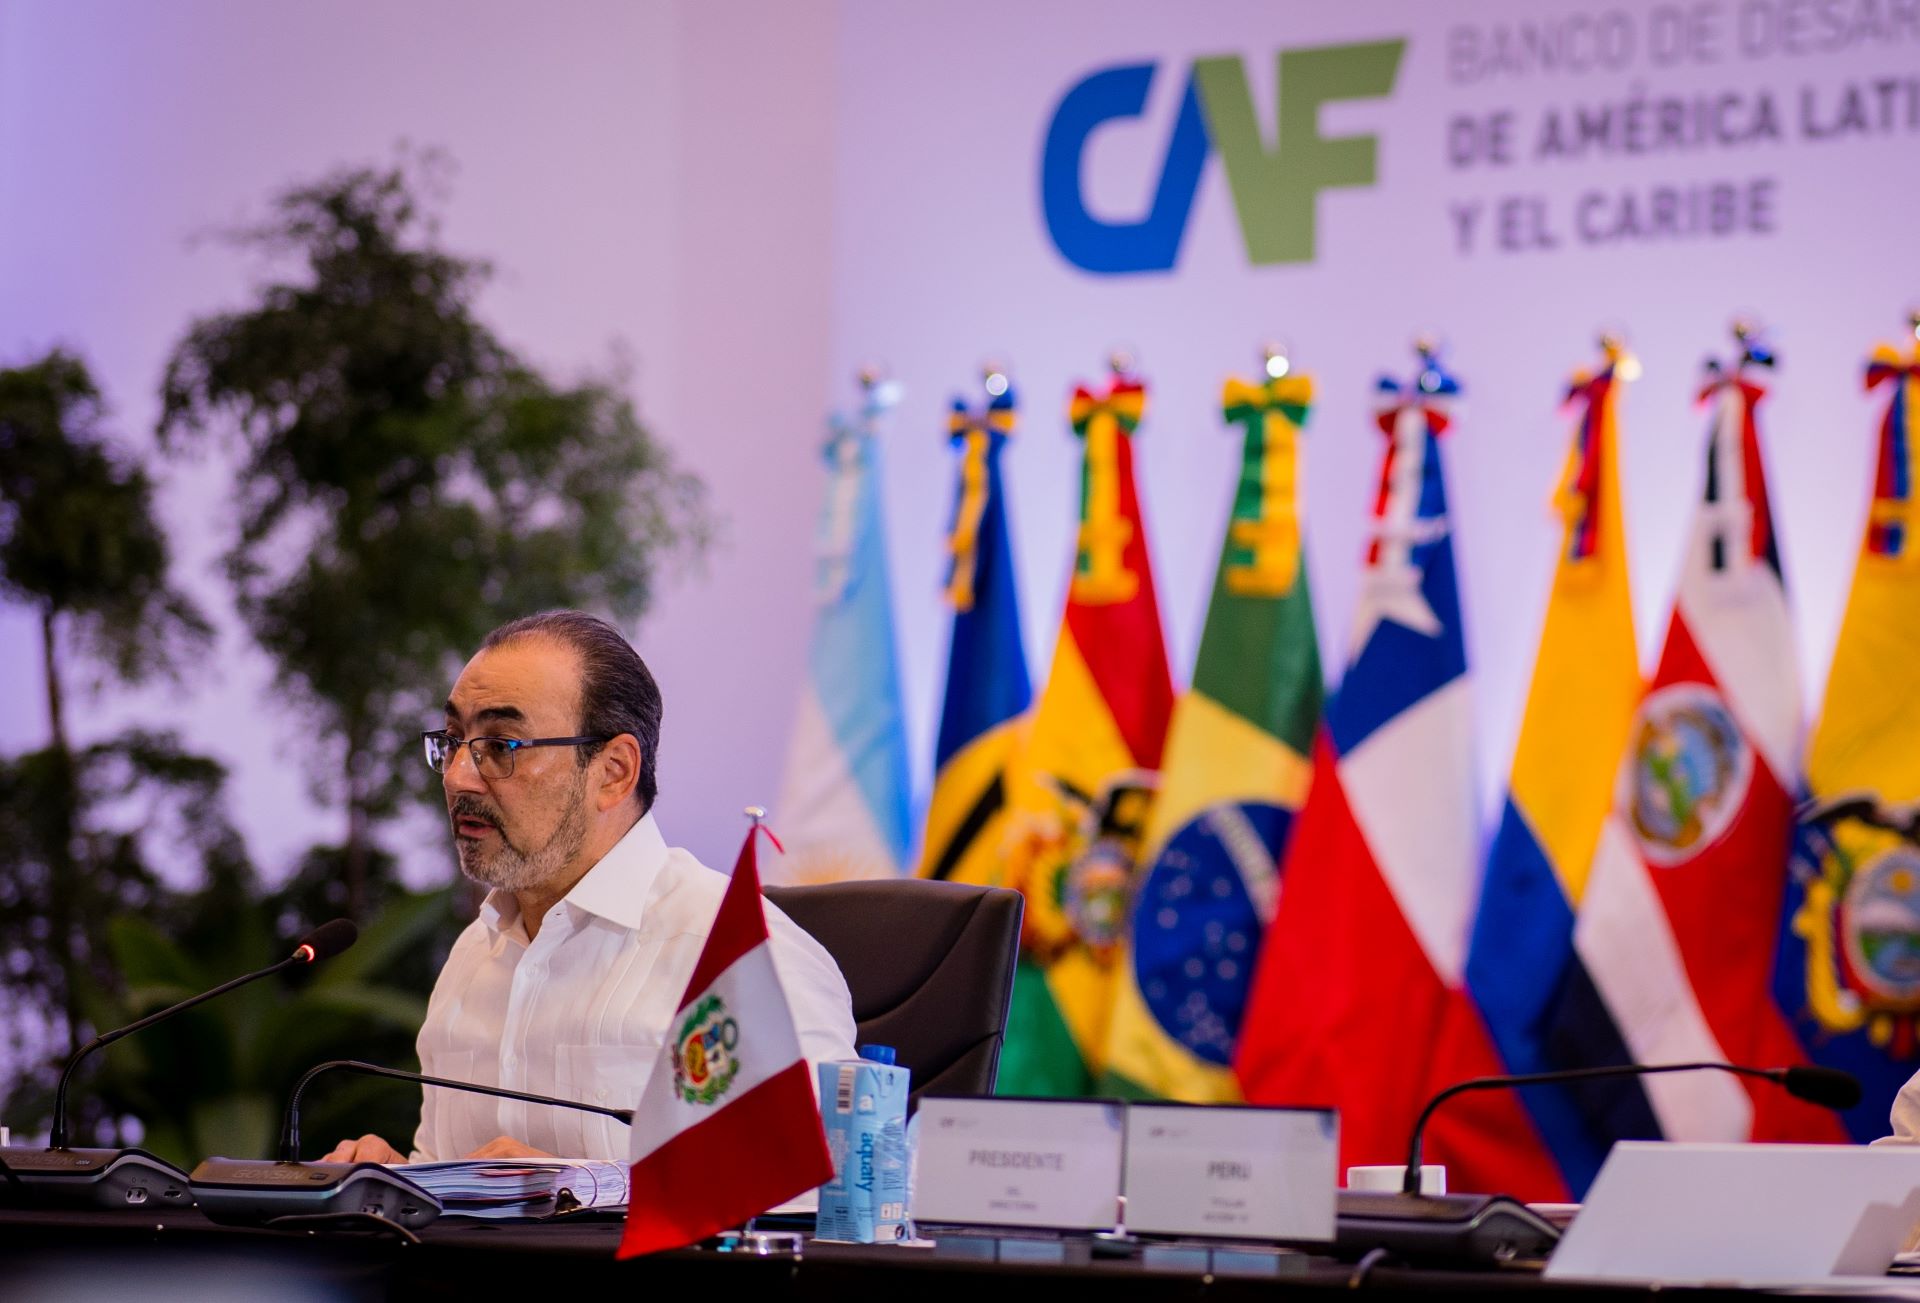 CAF apóia programa de assistência alimentar na Argentina